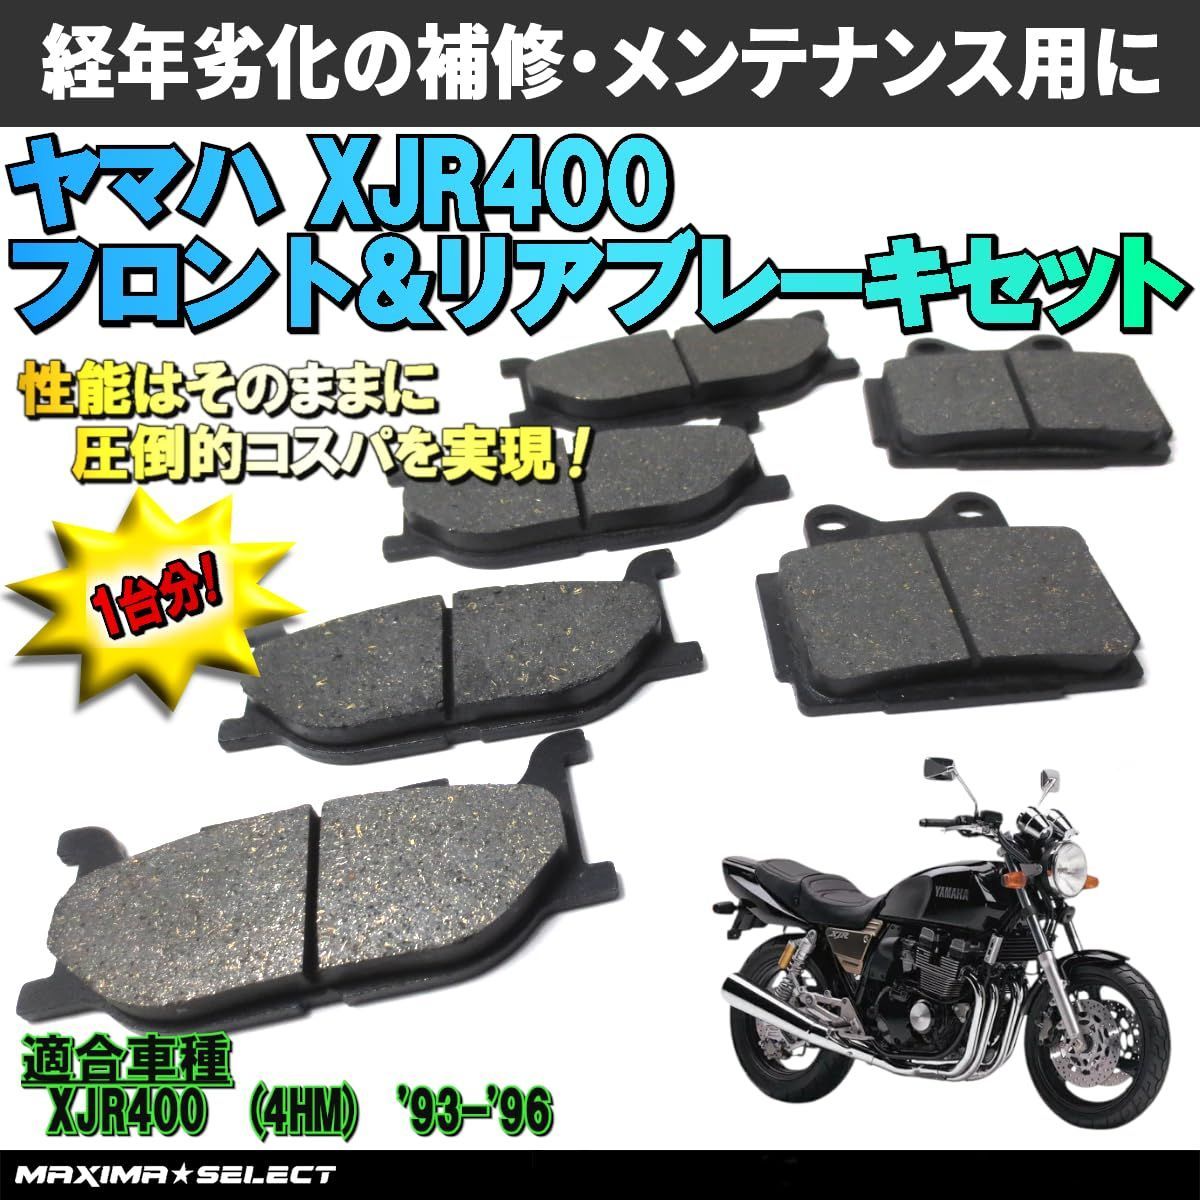 5841円 xjr400 パーツ 部品バイク - パーツバイク